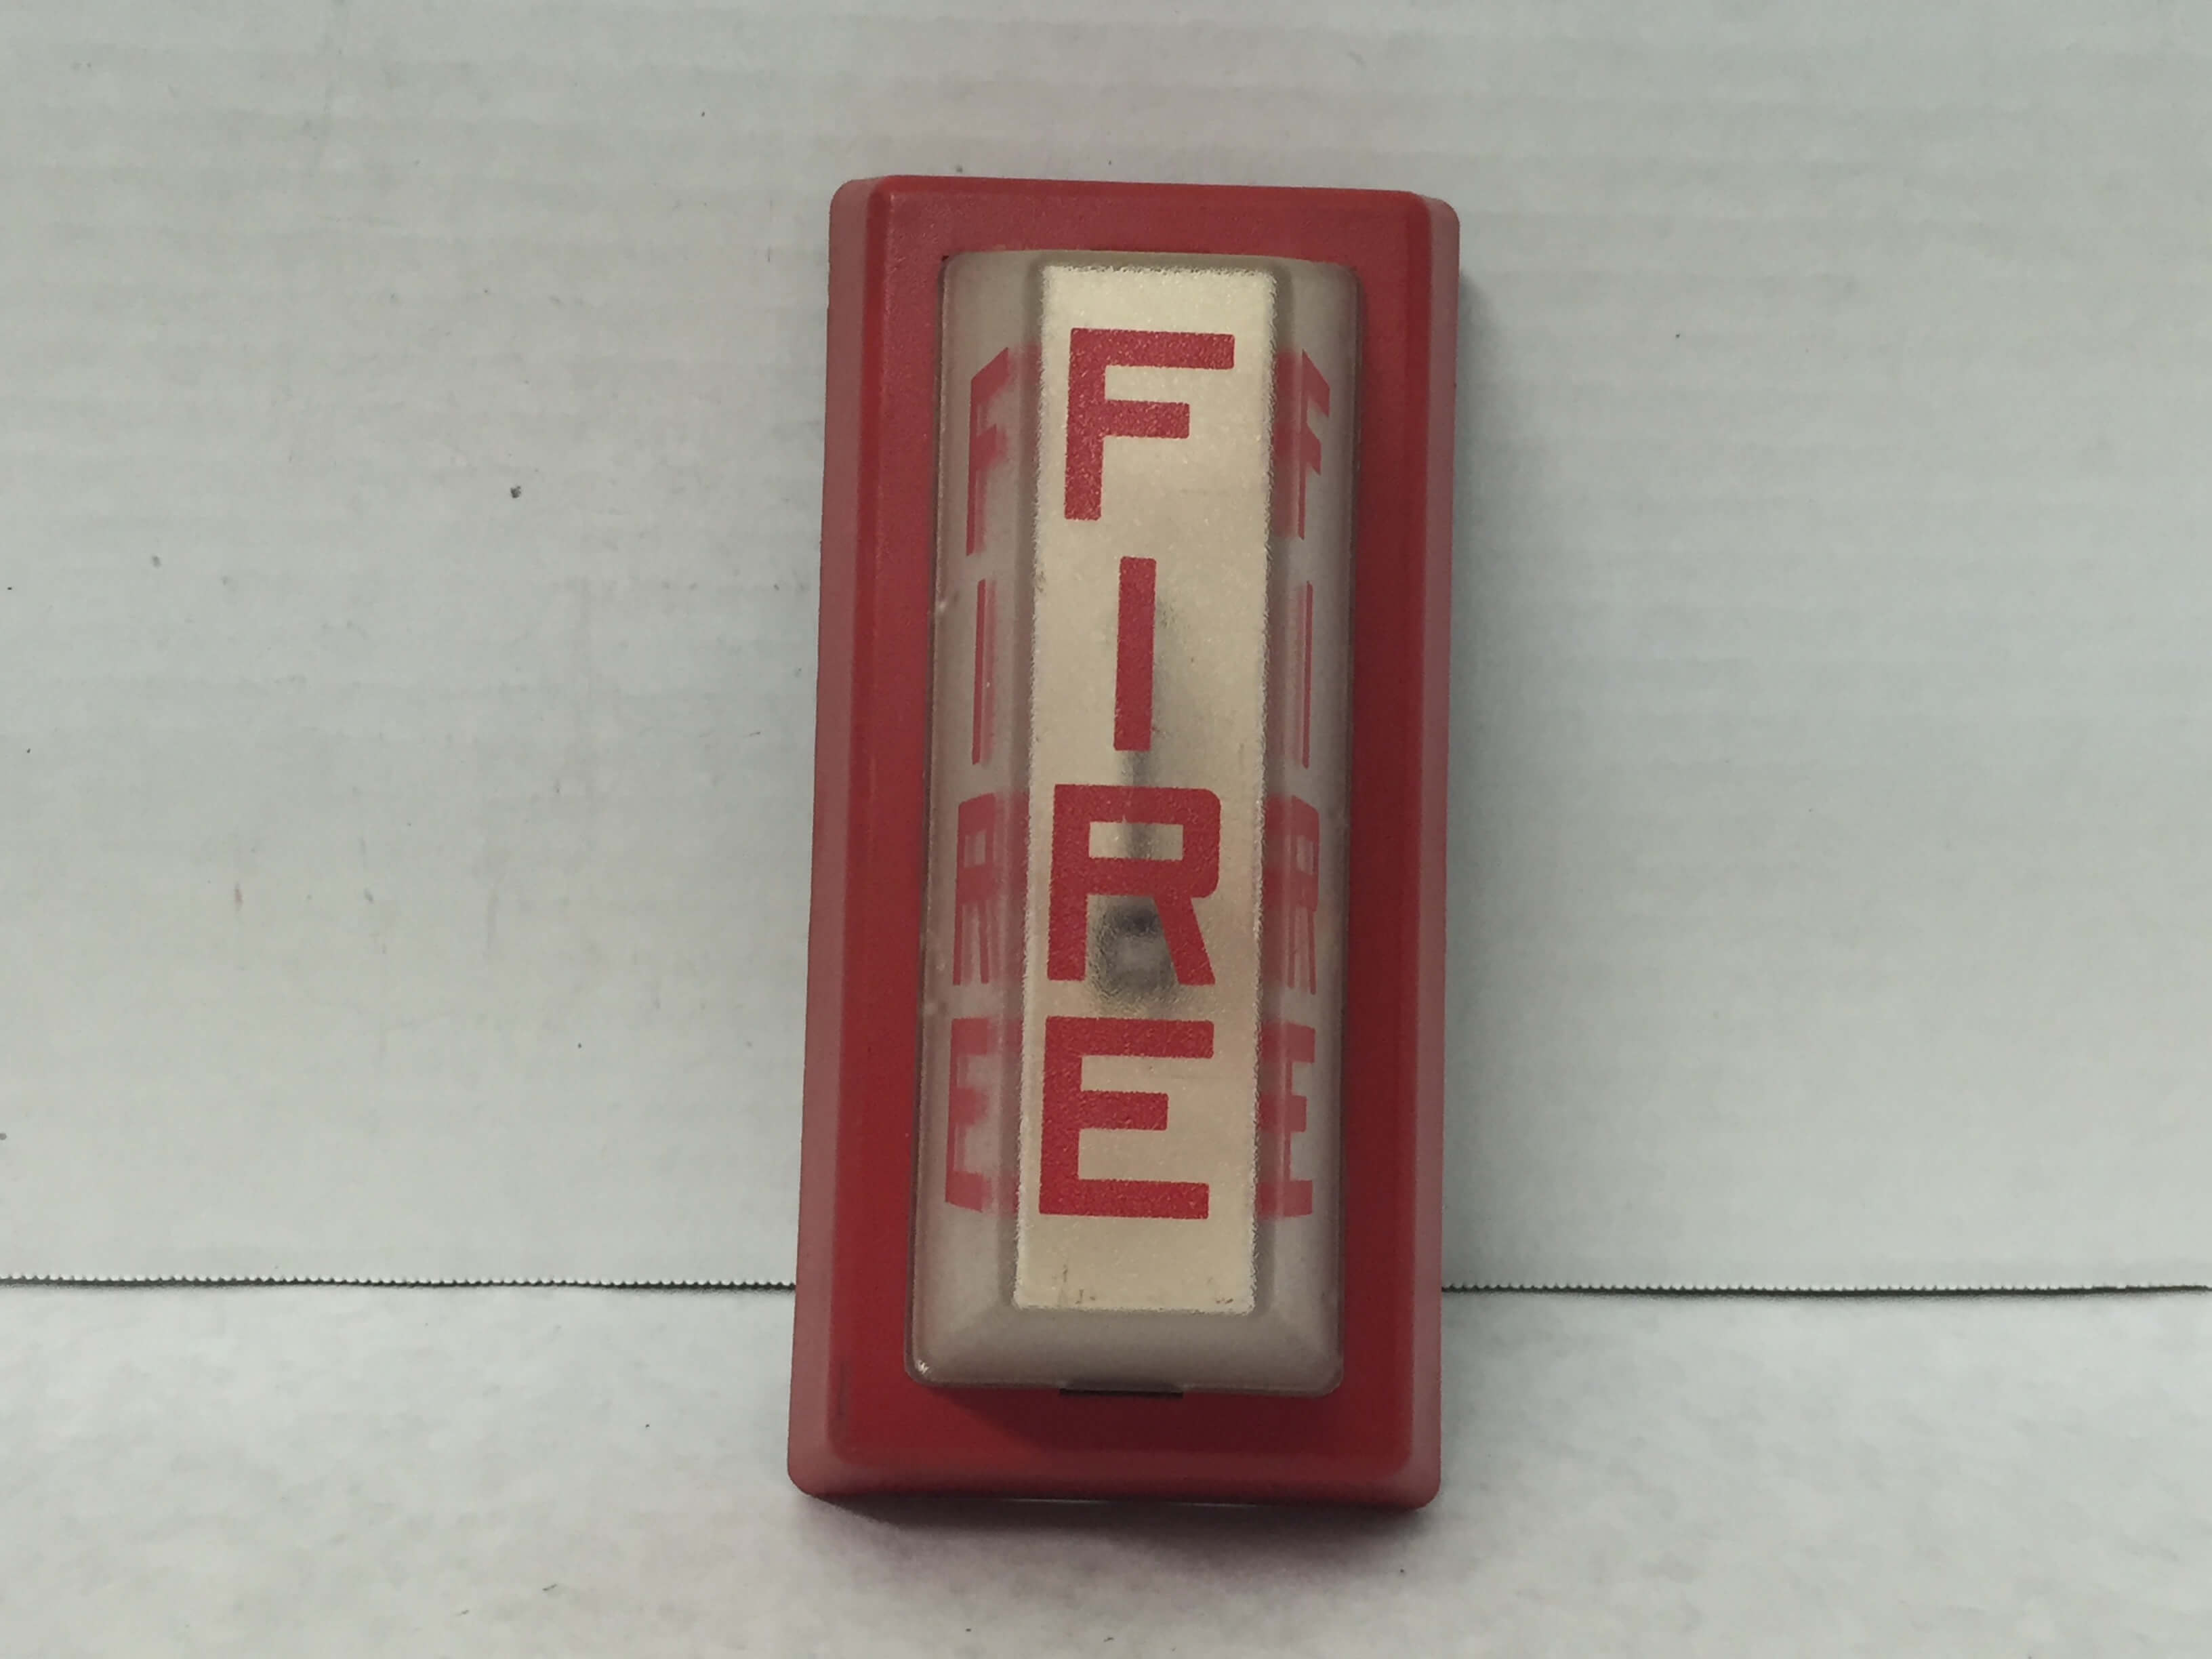 Simplex 4904-9101 - FireAlarms.tv - jjinc24/U8oL0's Fire Alarm ...